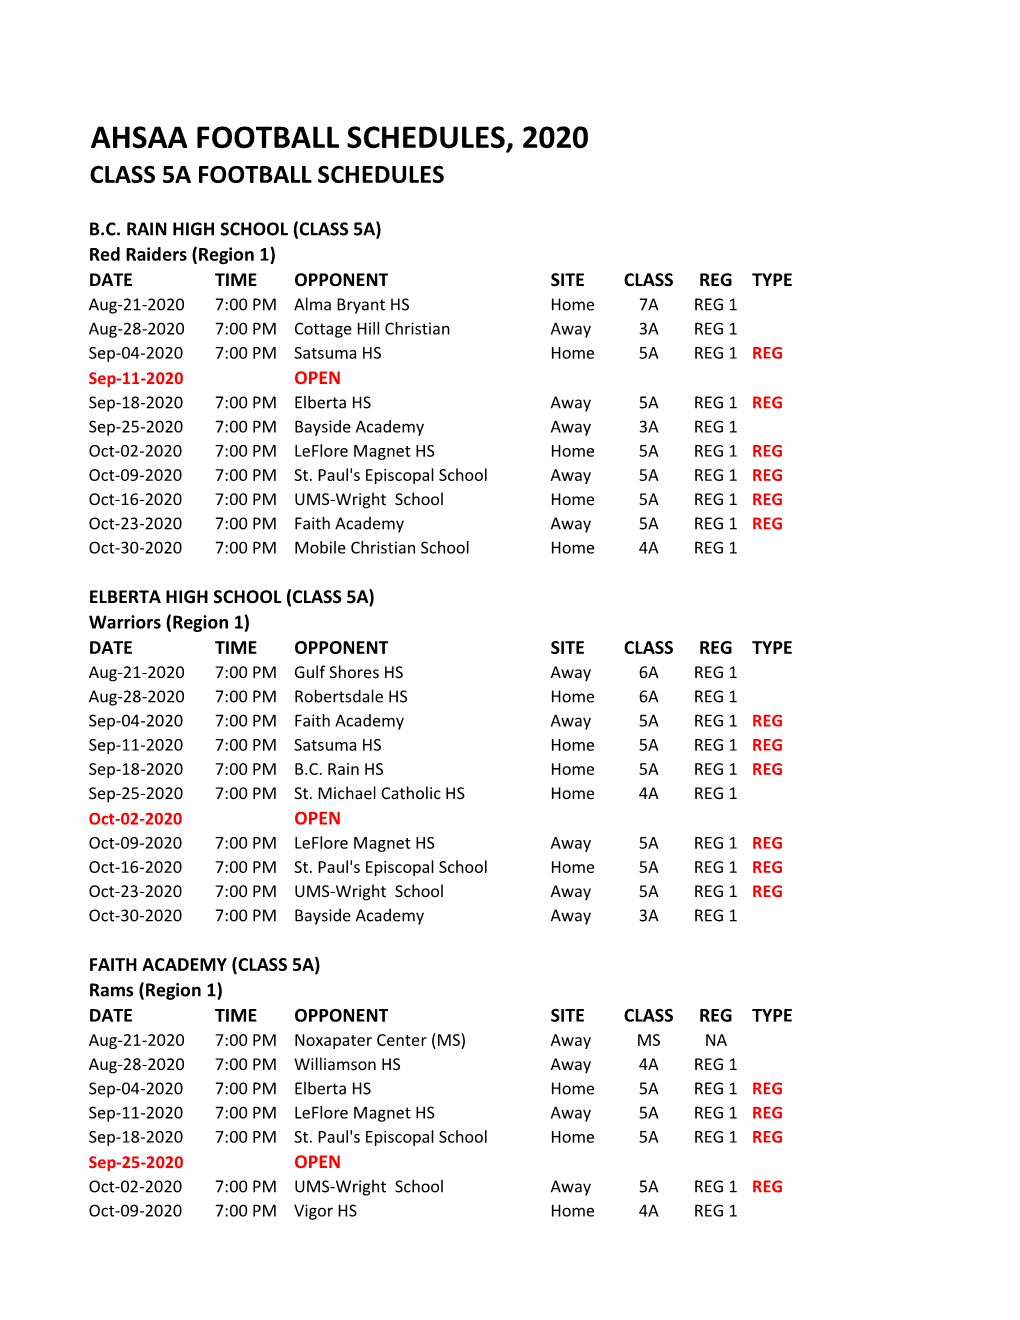 Class 5A Football Schedules